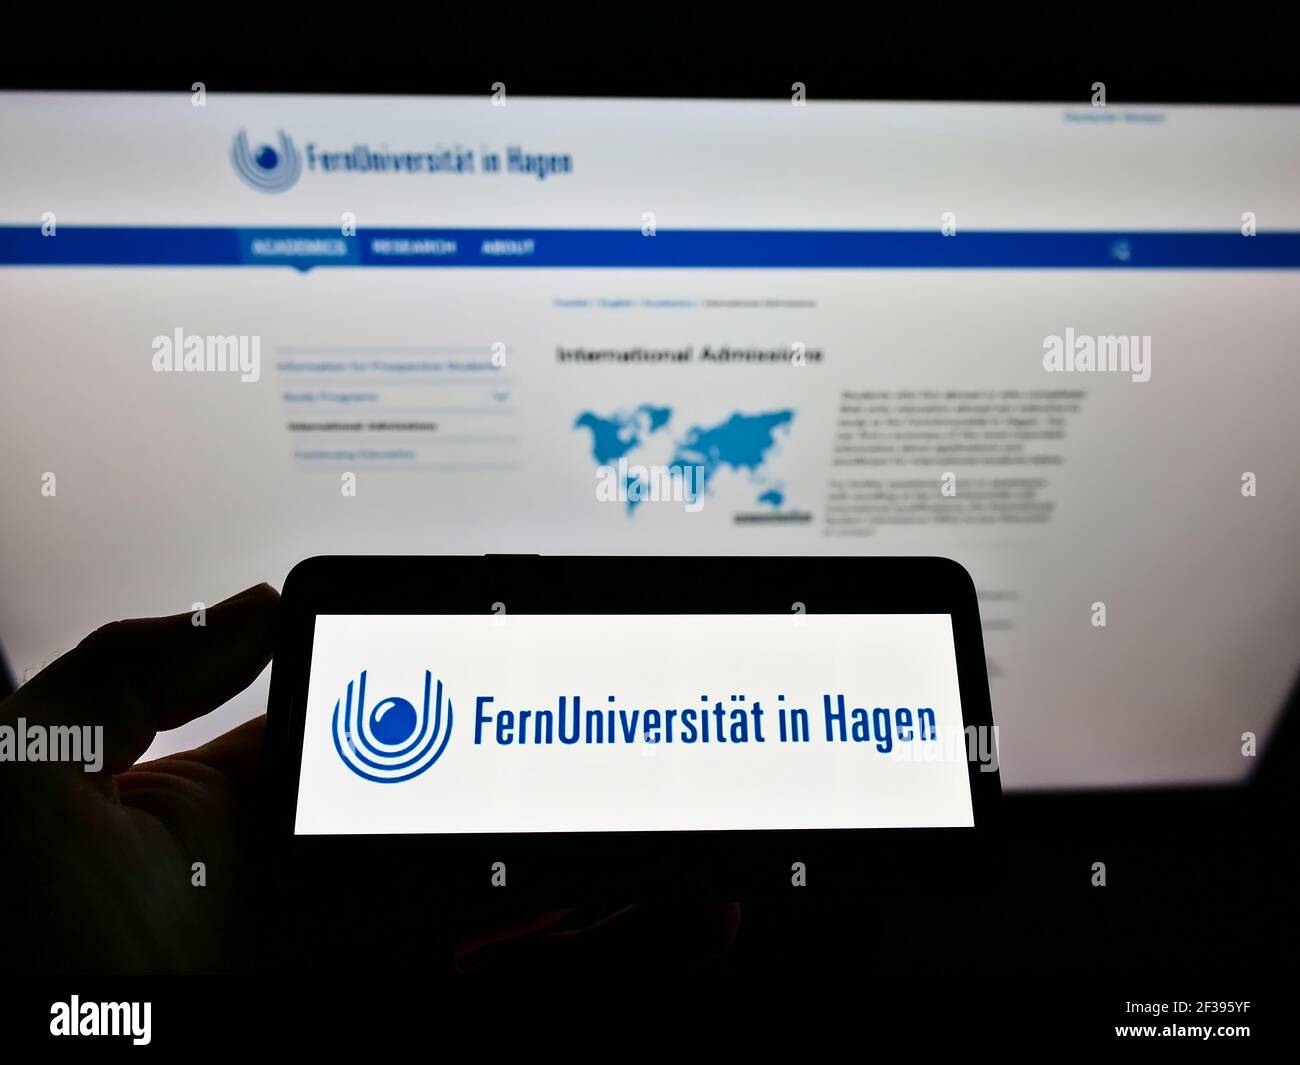 Persona che detiene il cellulare con il logo dell'università tedesca FernUniversität a Hagen sullo schermo davanti alla pagina web. Focus sul display del cellulare. Foto Stock